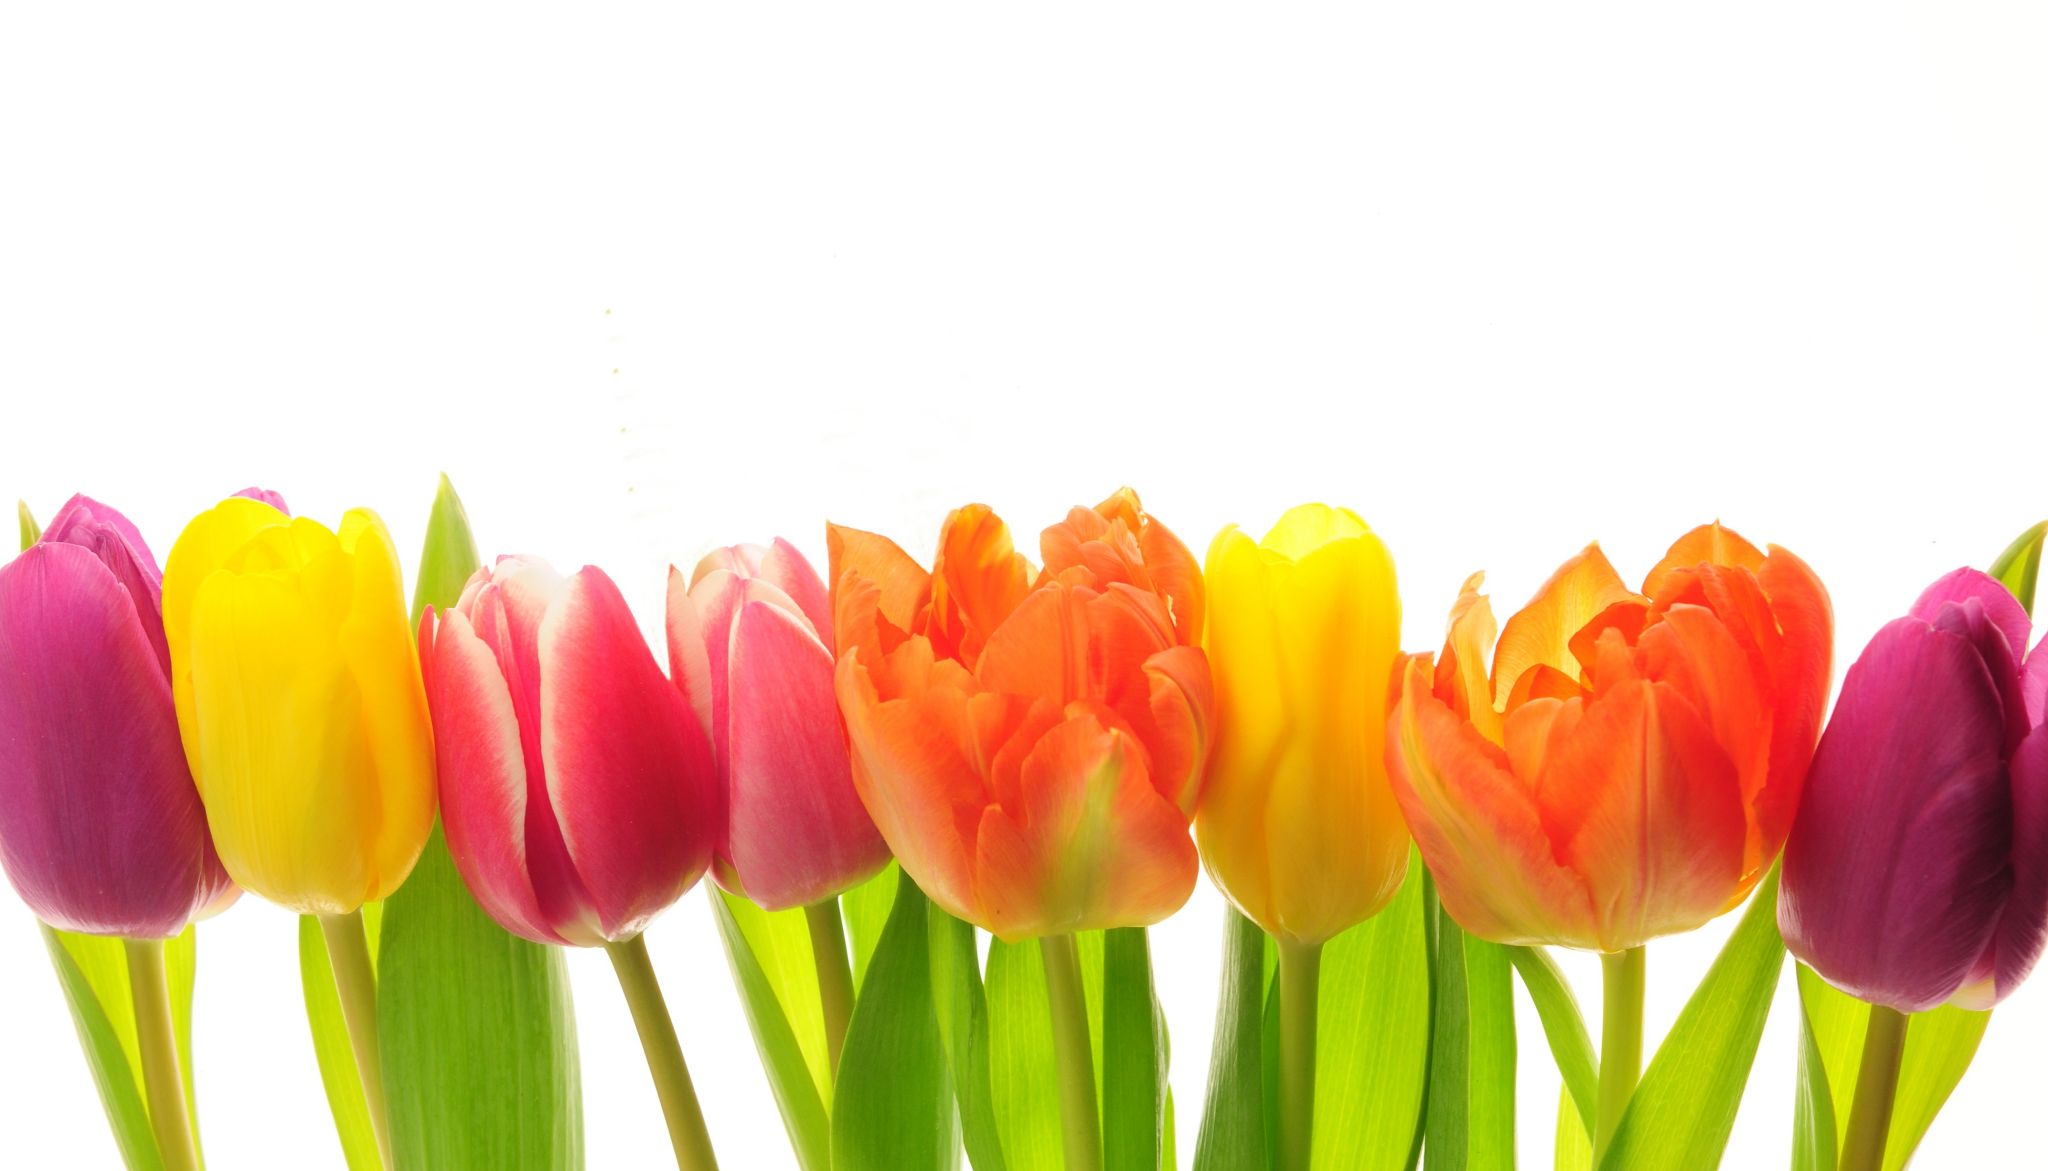 Les tulipes ont des teintes très variées.